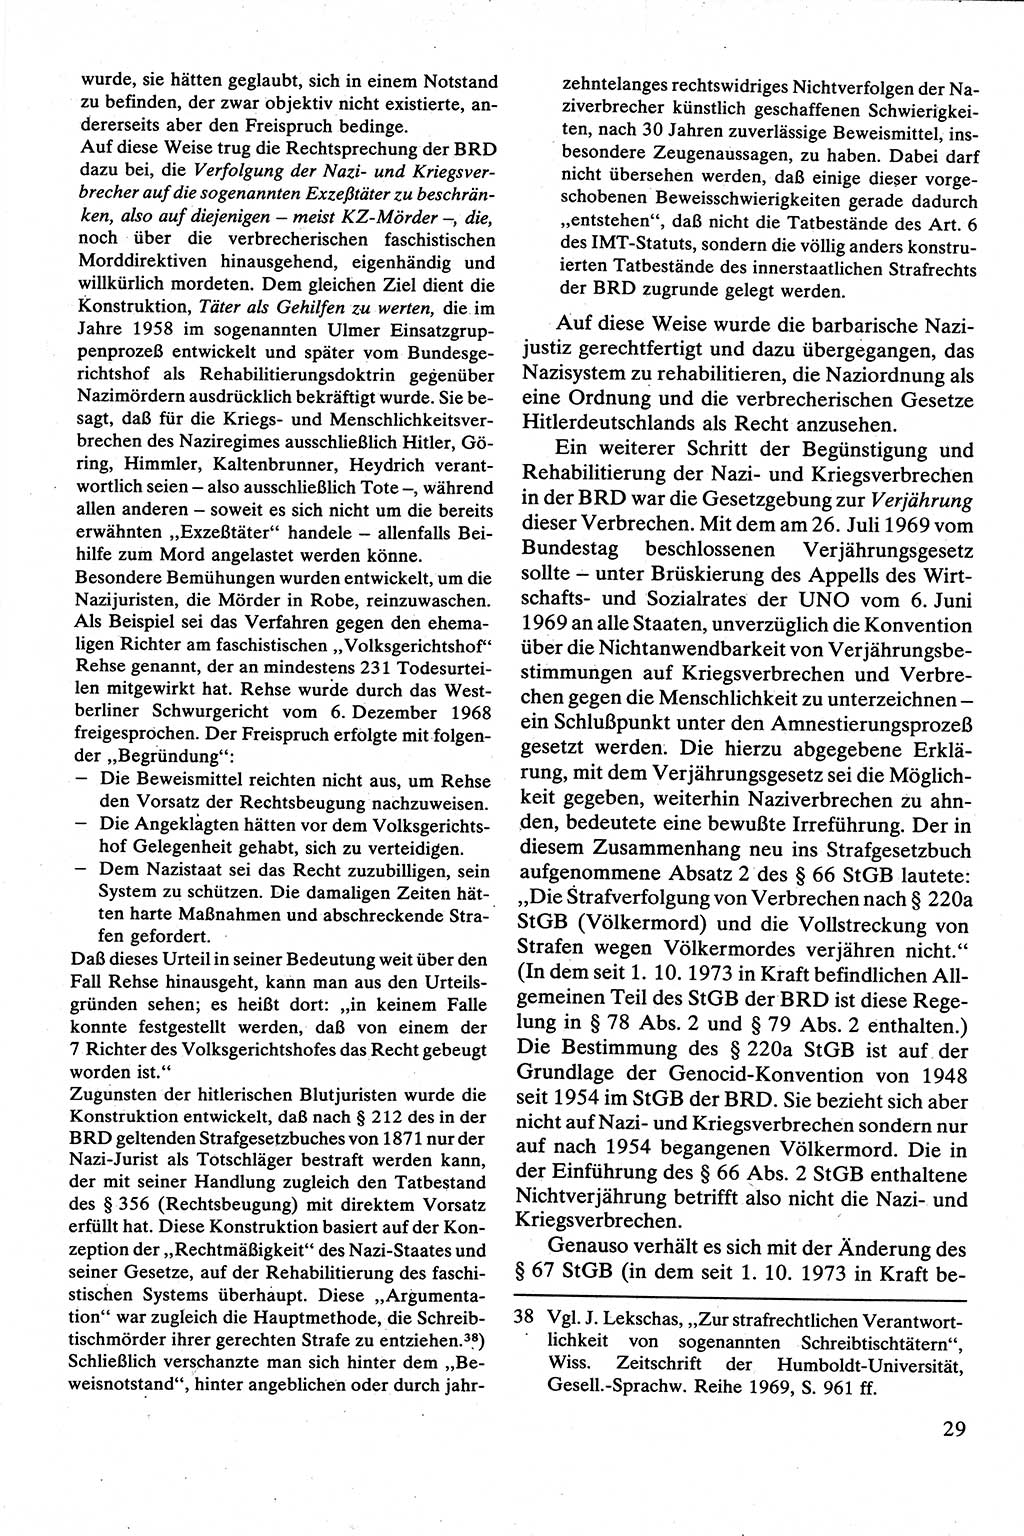 Strafrecht [Deutsche Demokratische Republik (DDR)], Besonderer Teil, Lehrbuch 1981, Seite 29 (Strafr. DDR BT Lb. 1981, S. 29)